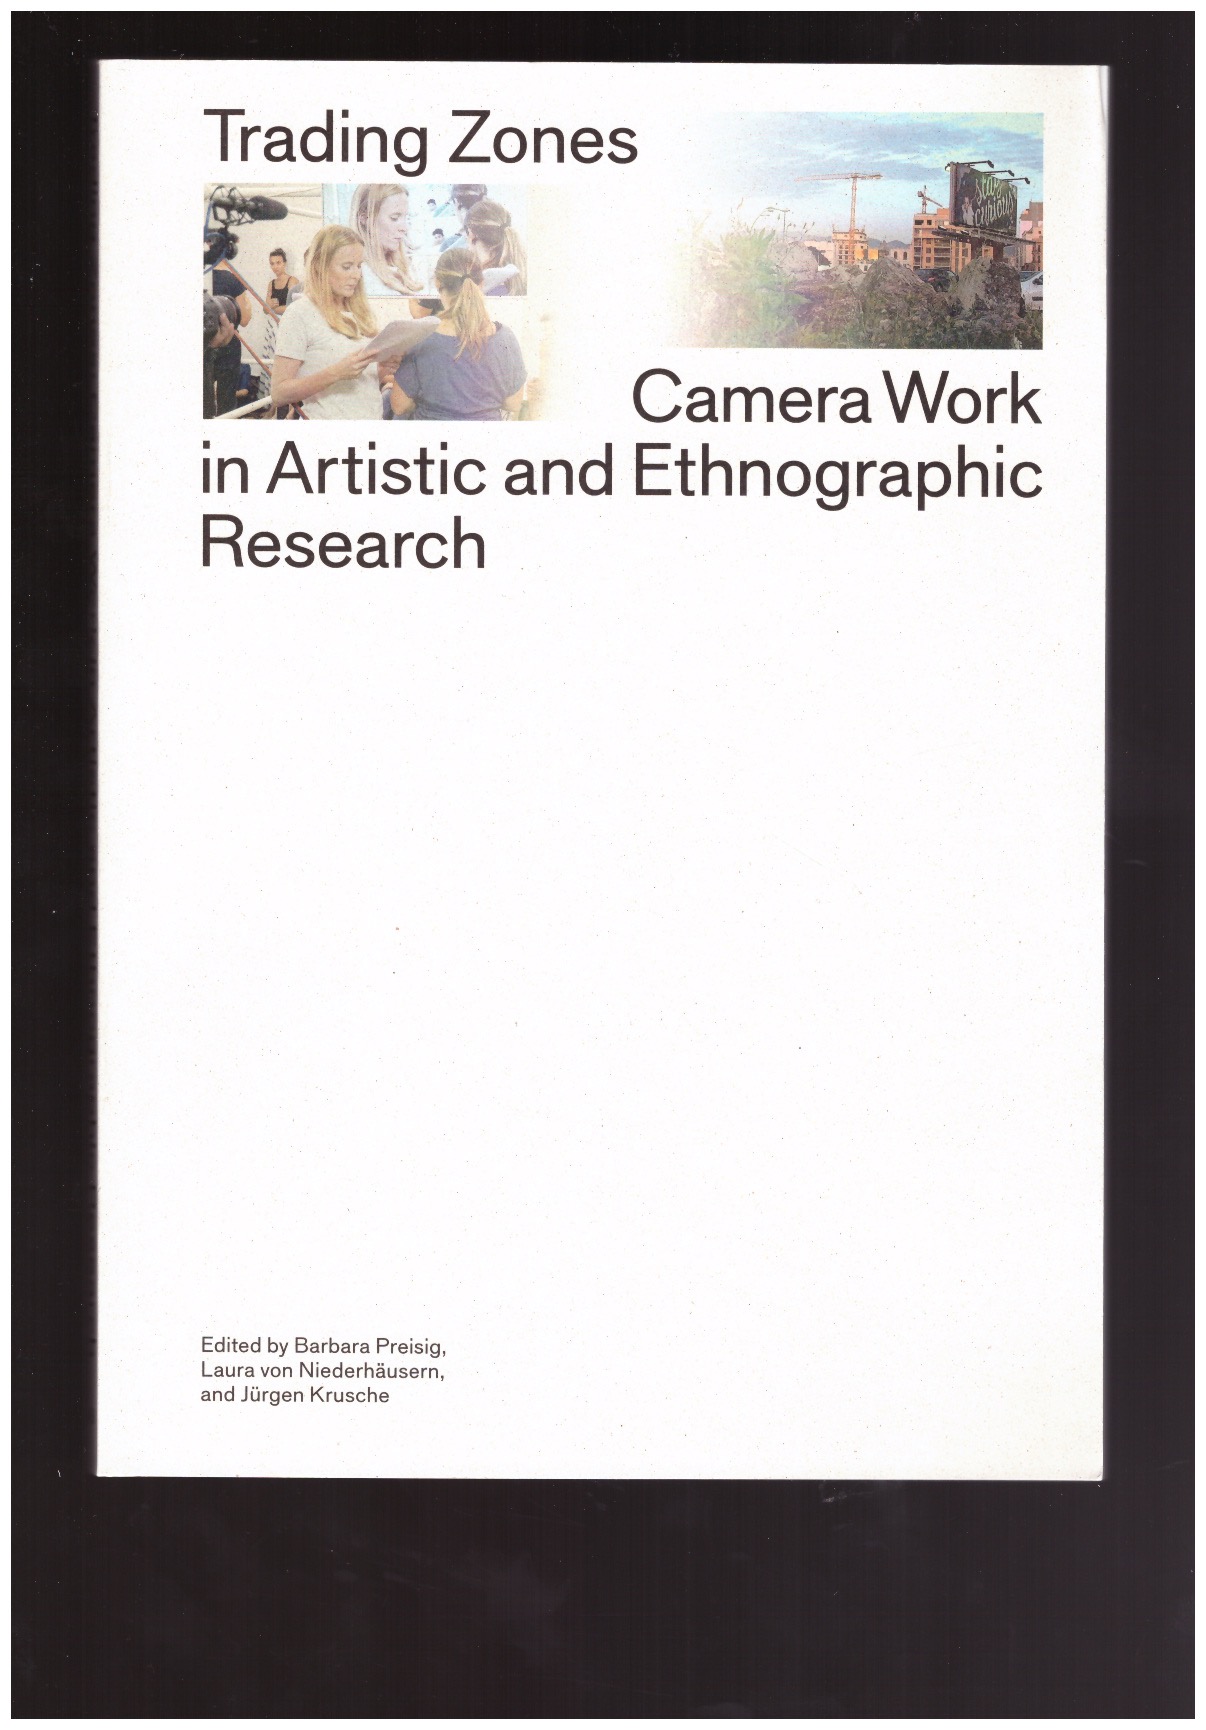 PREISIG, Barbara; VON DIEDERHÄUSERN, Laura; KRUSCHE, Jürgen (eds.) - Trading Zones – Camera Work in Artistic and Ethnographic Research